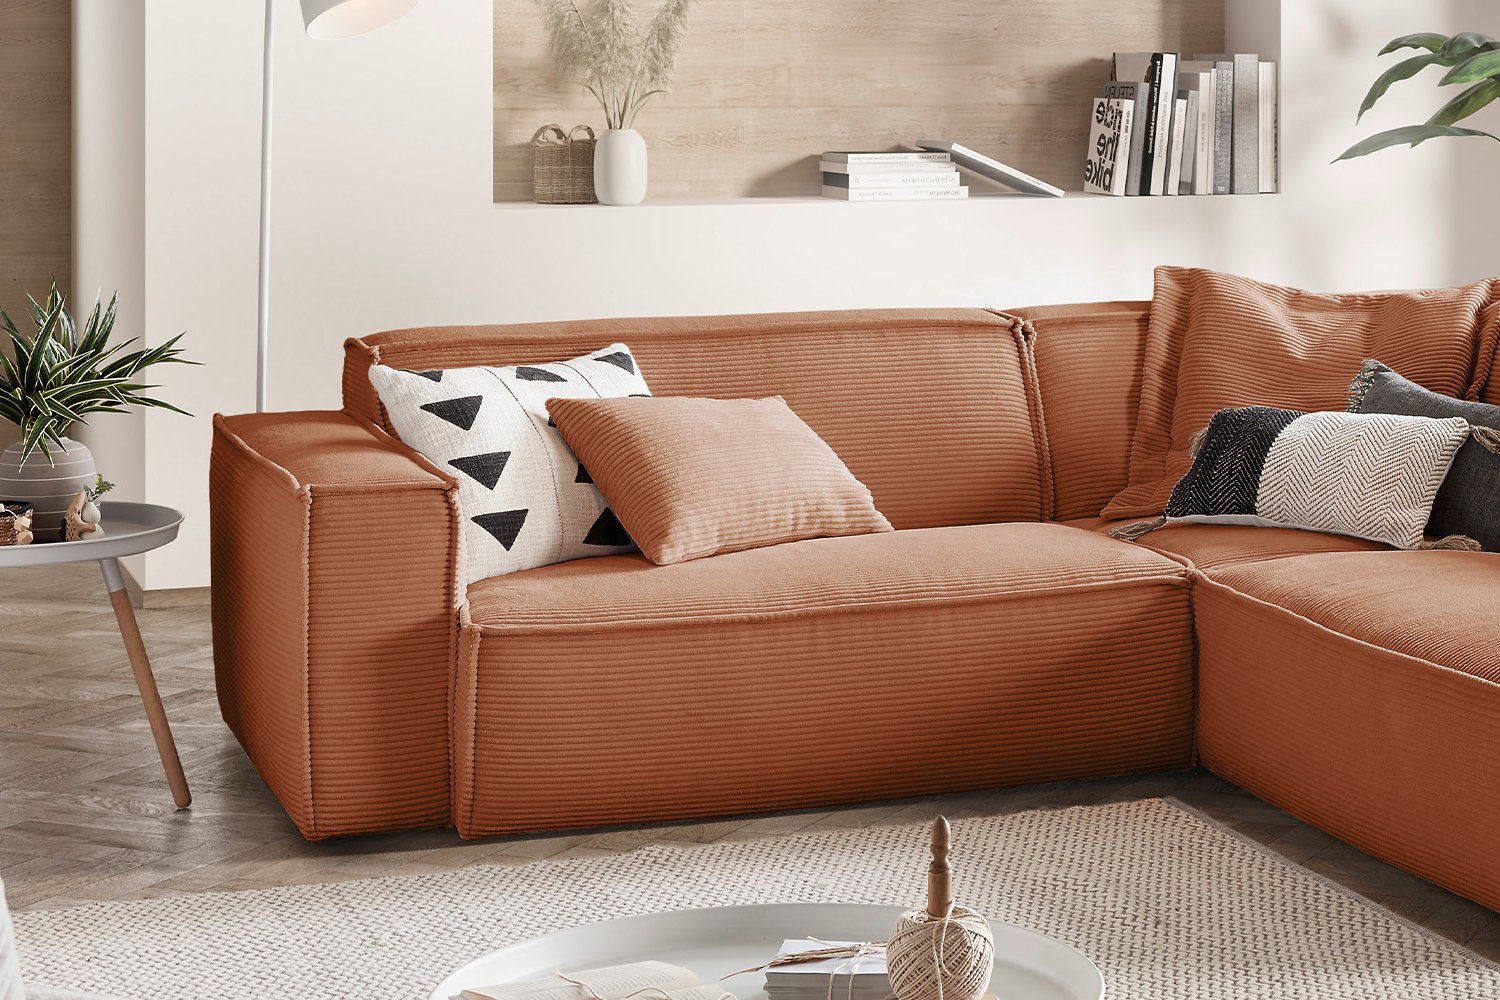 Sofa links, od. rechts SAMU, Farben Ecksofa Recamiere rost Cord, KAWOLA versch.